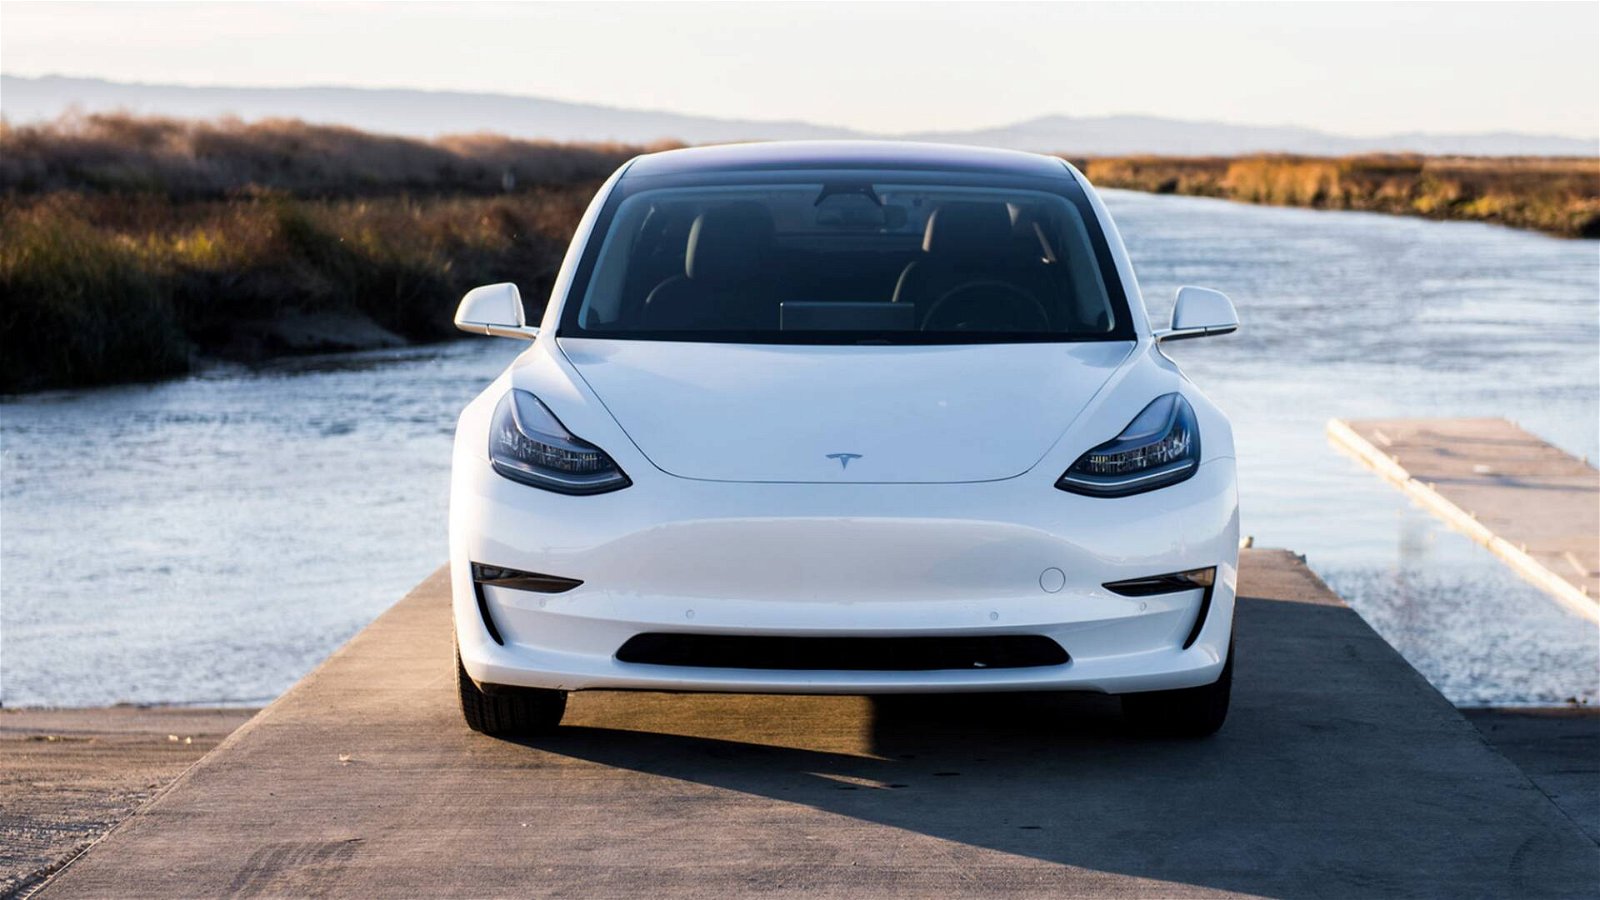 Immagine di Mercato auto Tesla: come affronterà la concorrenza?